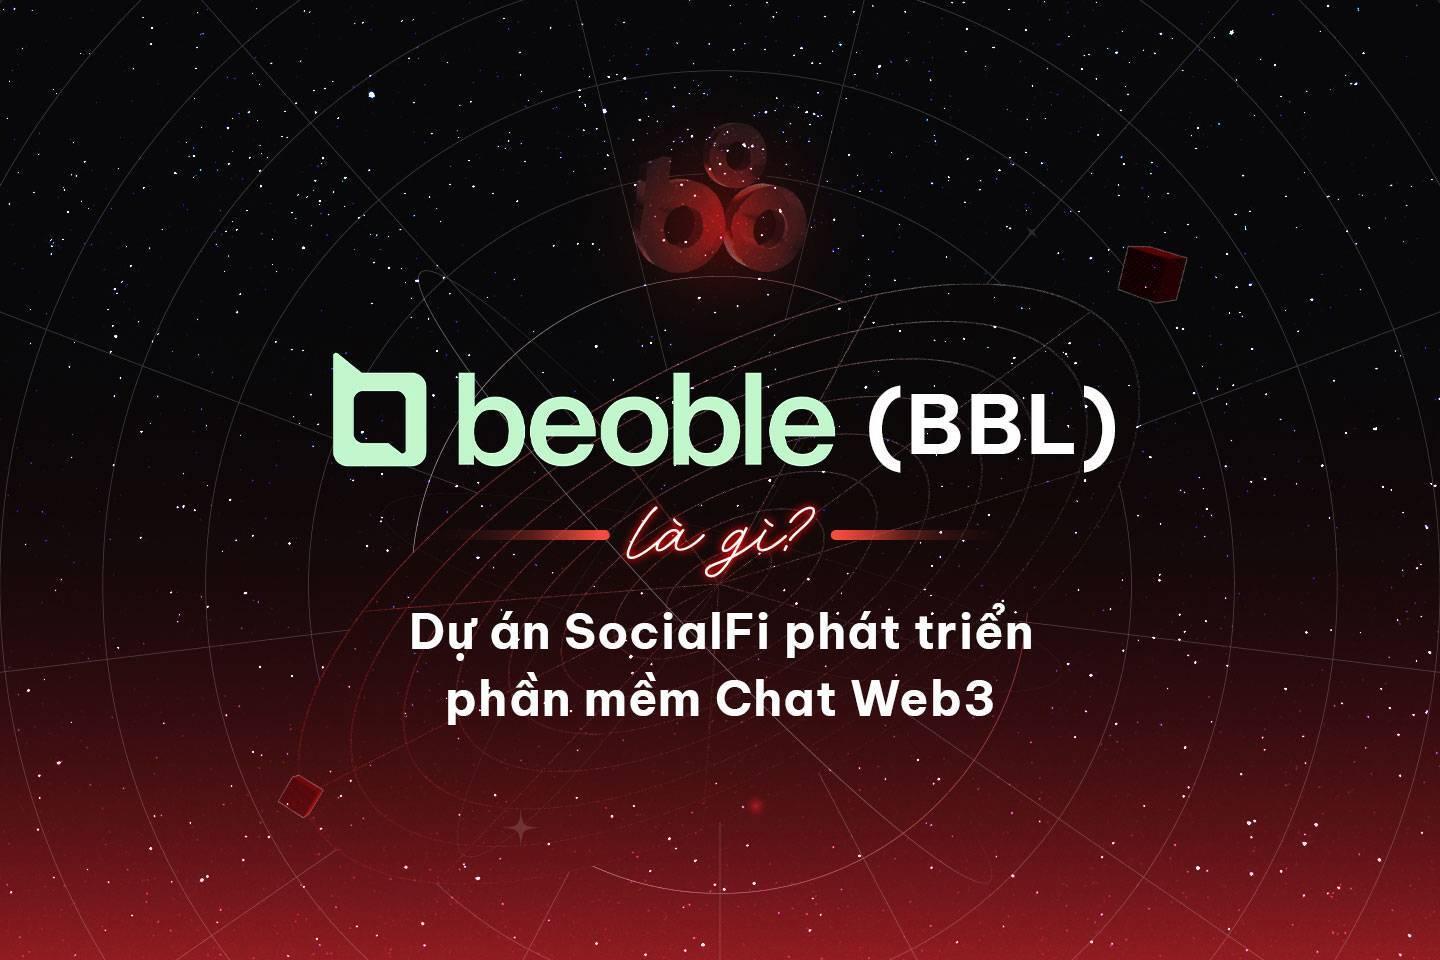 beoble-bbl-la-gi-du-an-socialfi-phat-trien-phan-mem-chat-web3